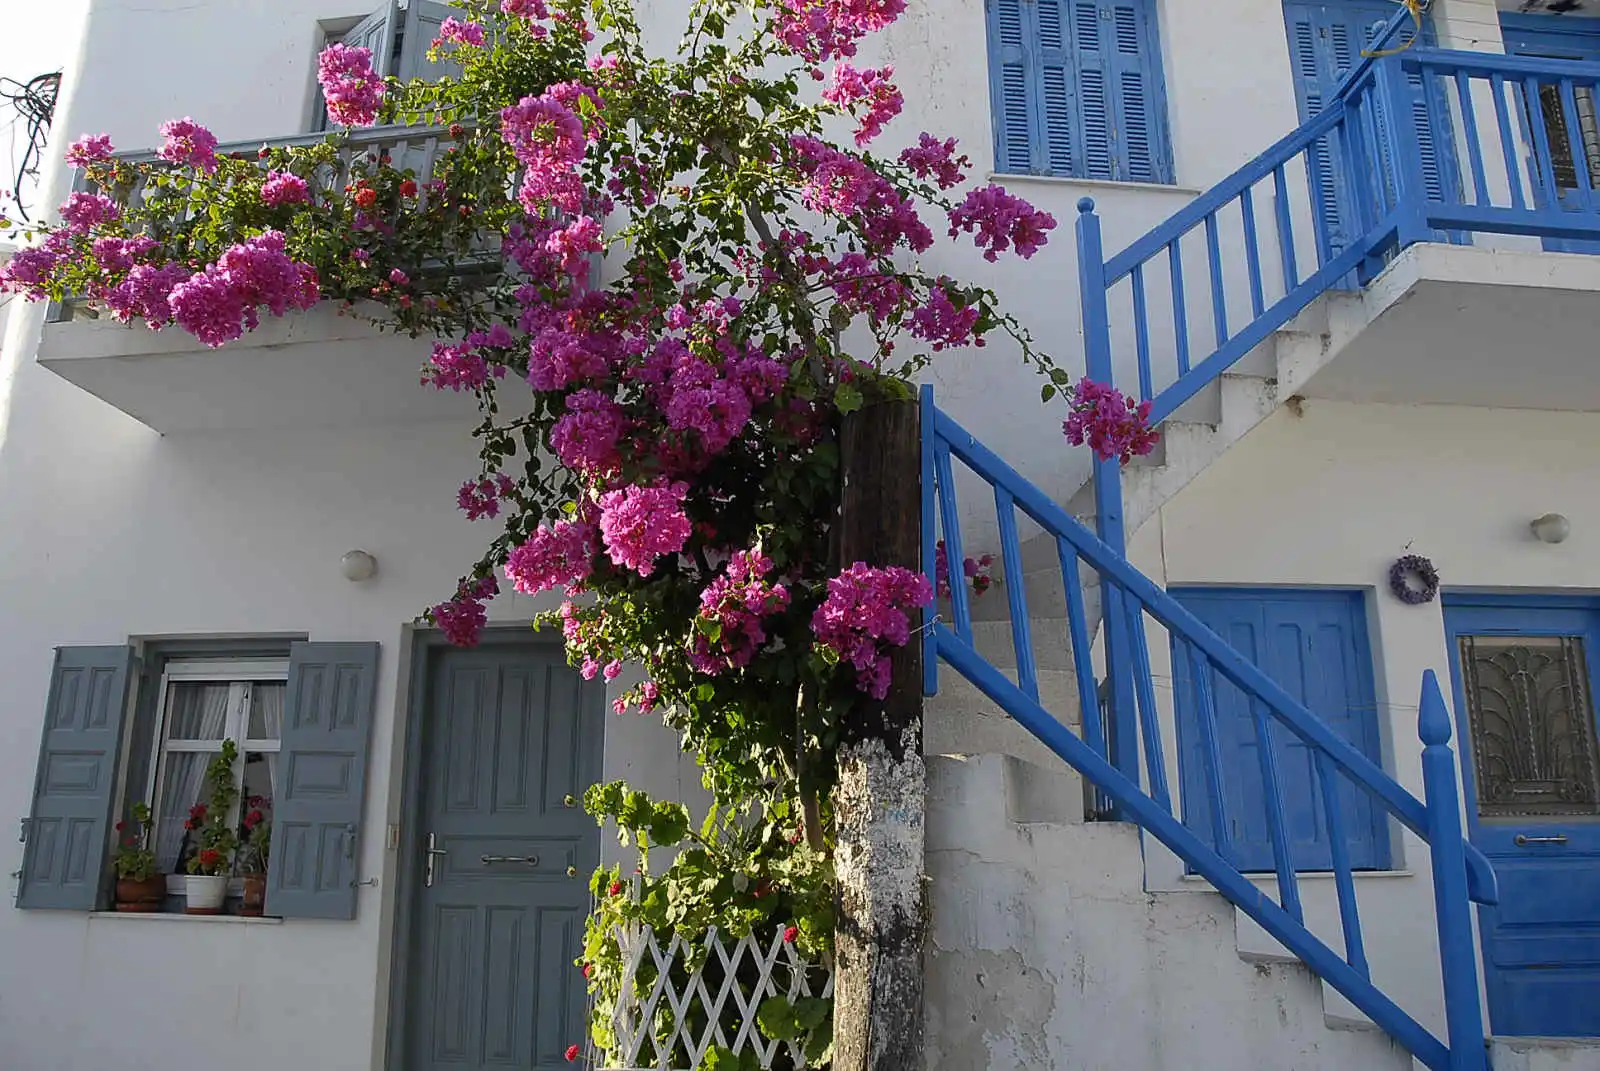 Maison fleurie à Mykonos, Grèce